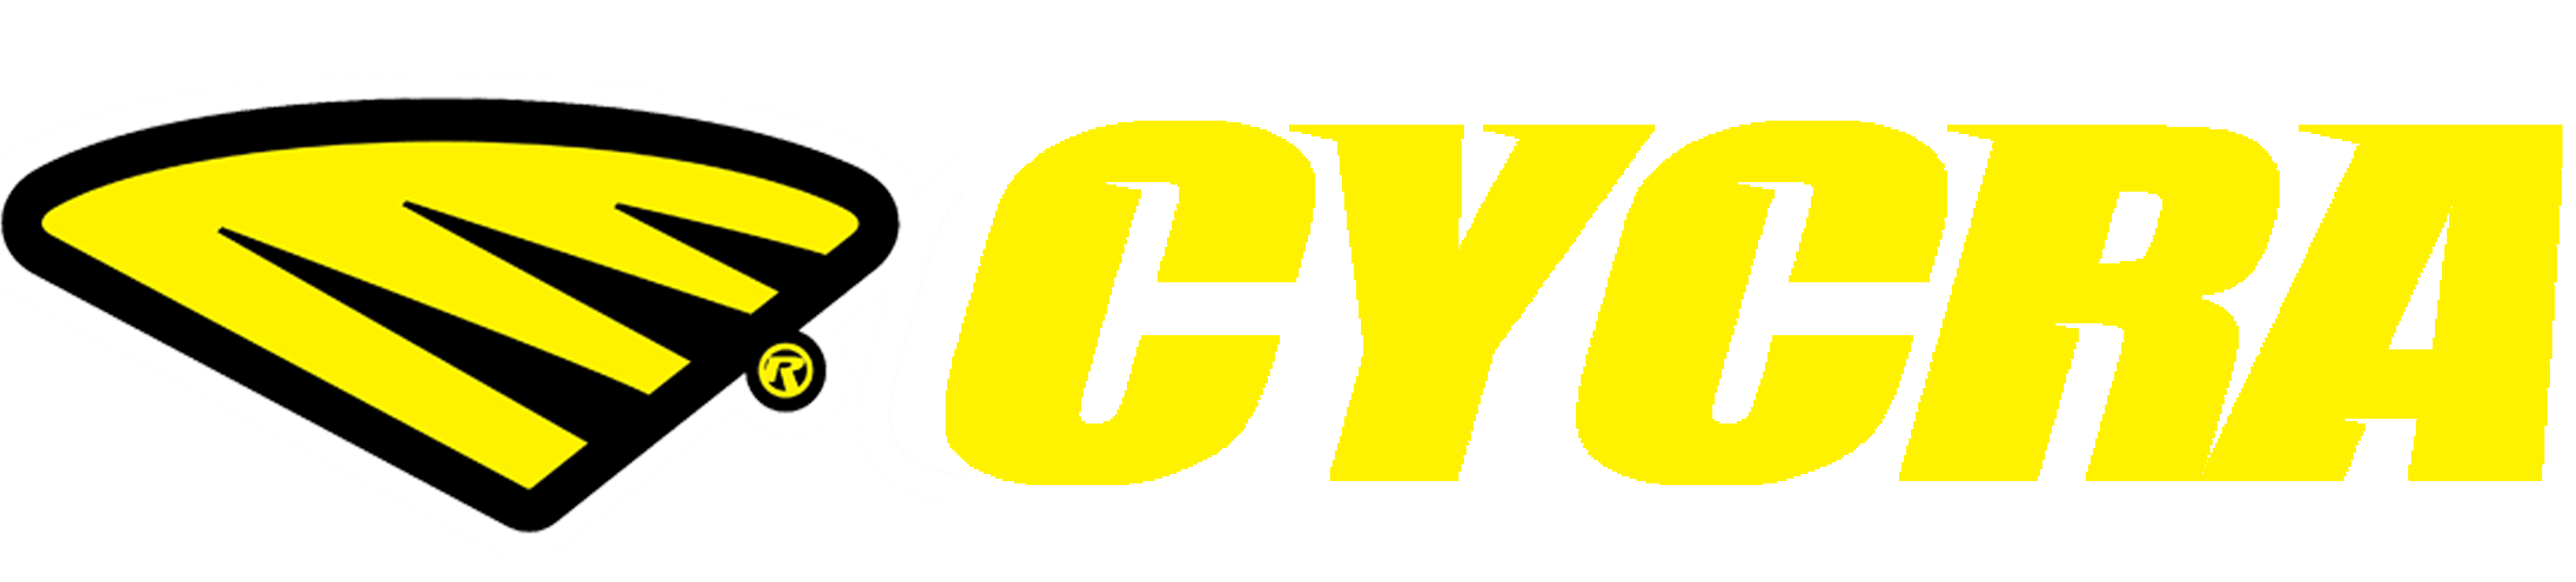 Cycra Logo - Cycra Motocross